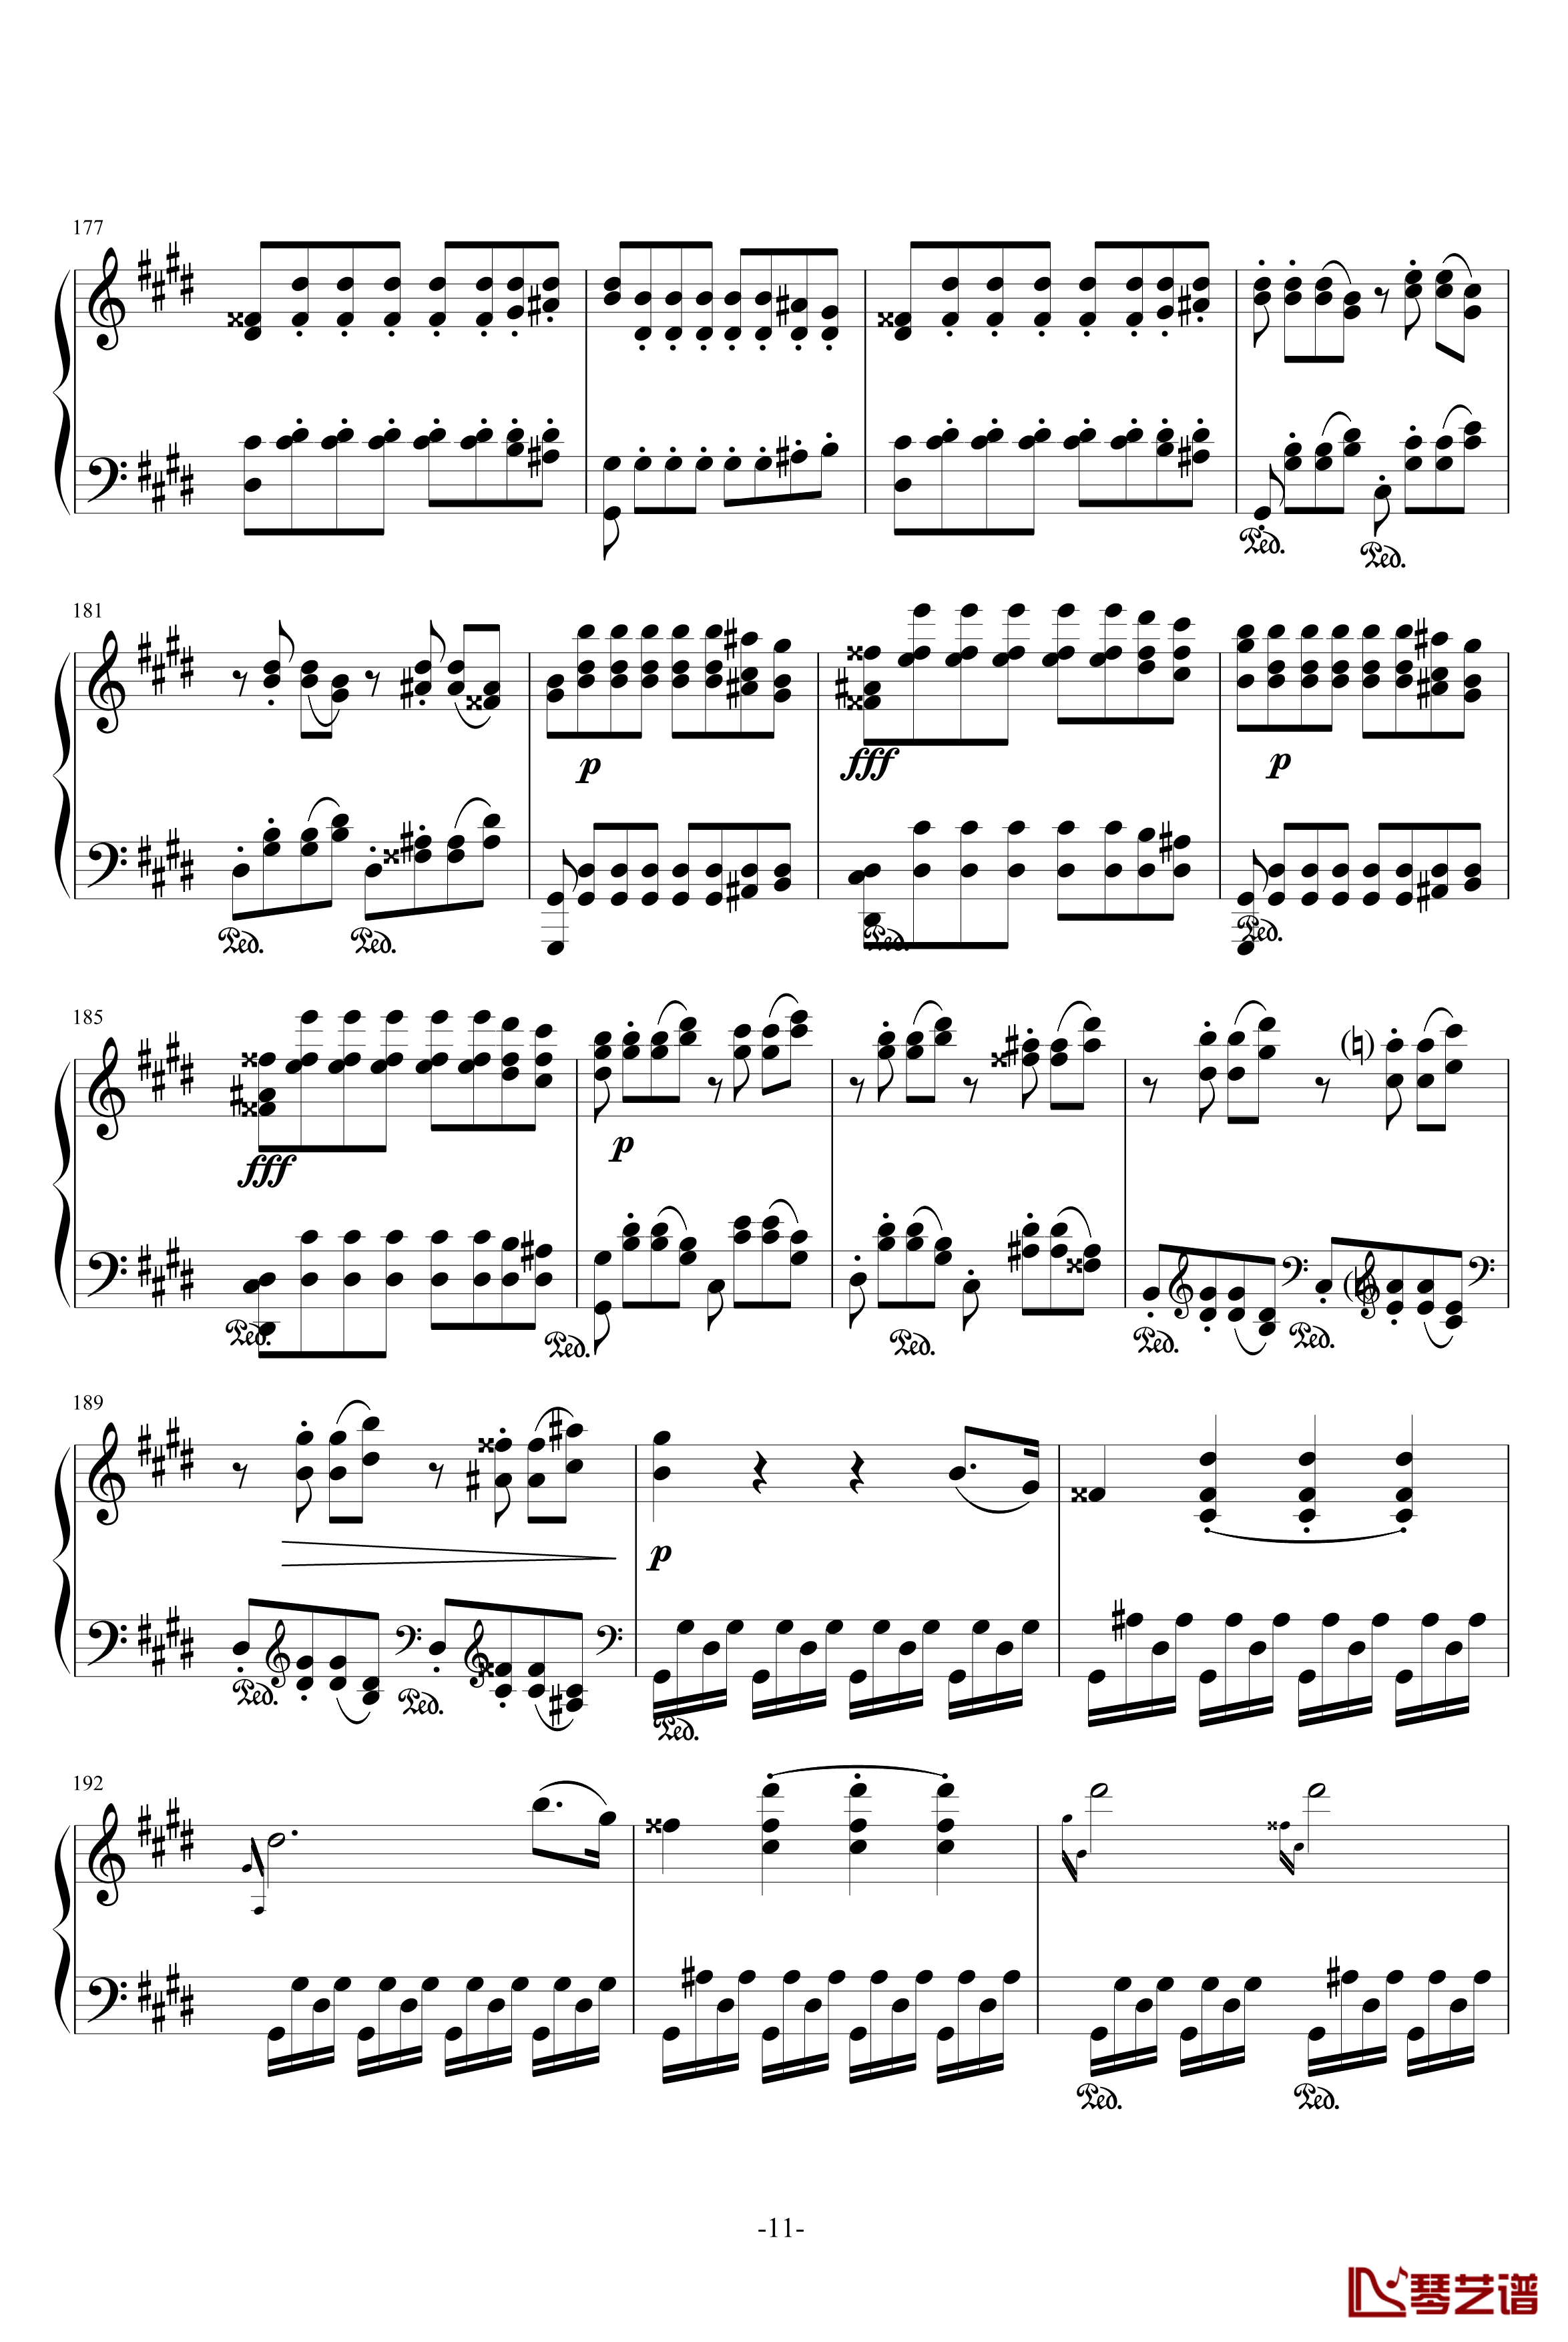 月光奏鸣曲钢琴谱-1，2，3乐章-贝多芬-beethoven11